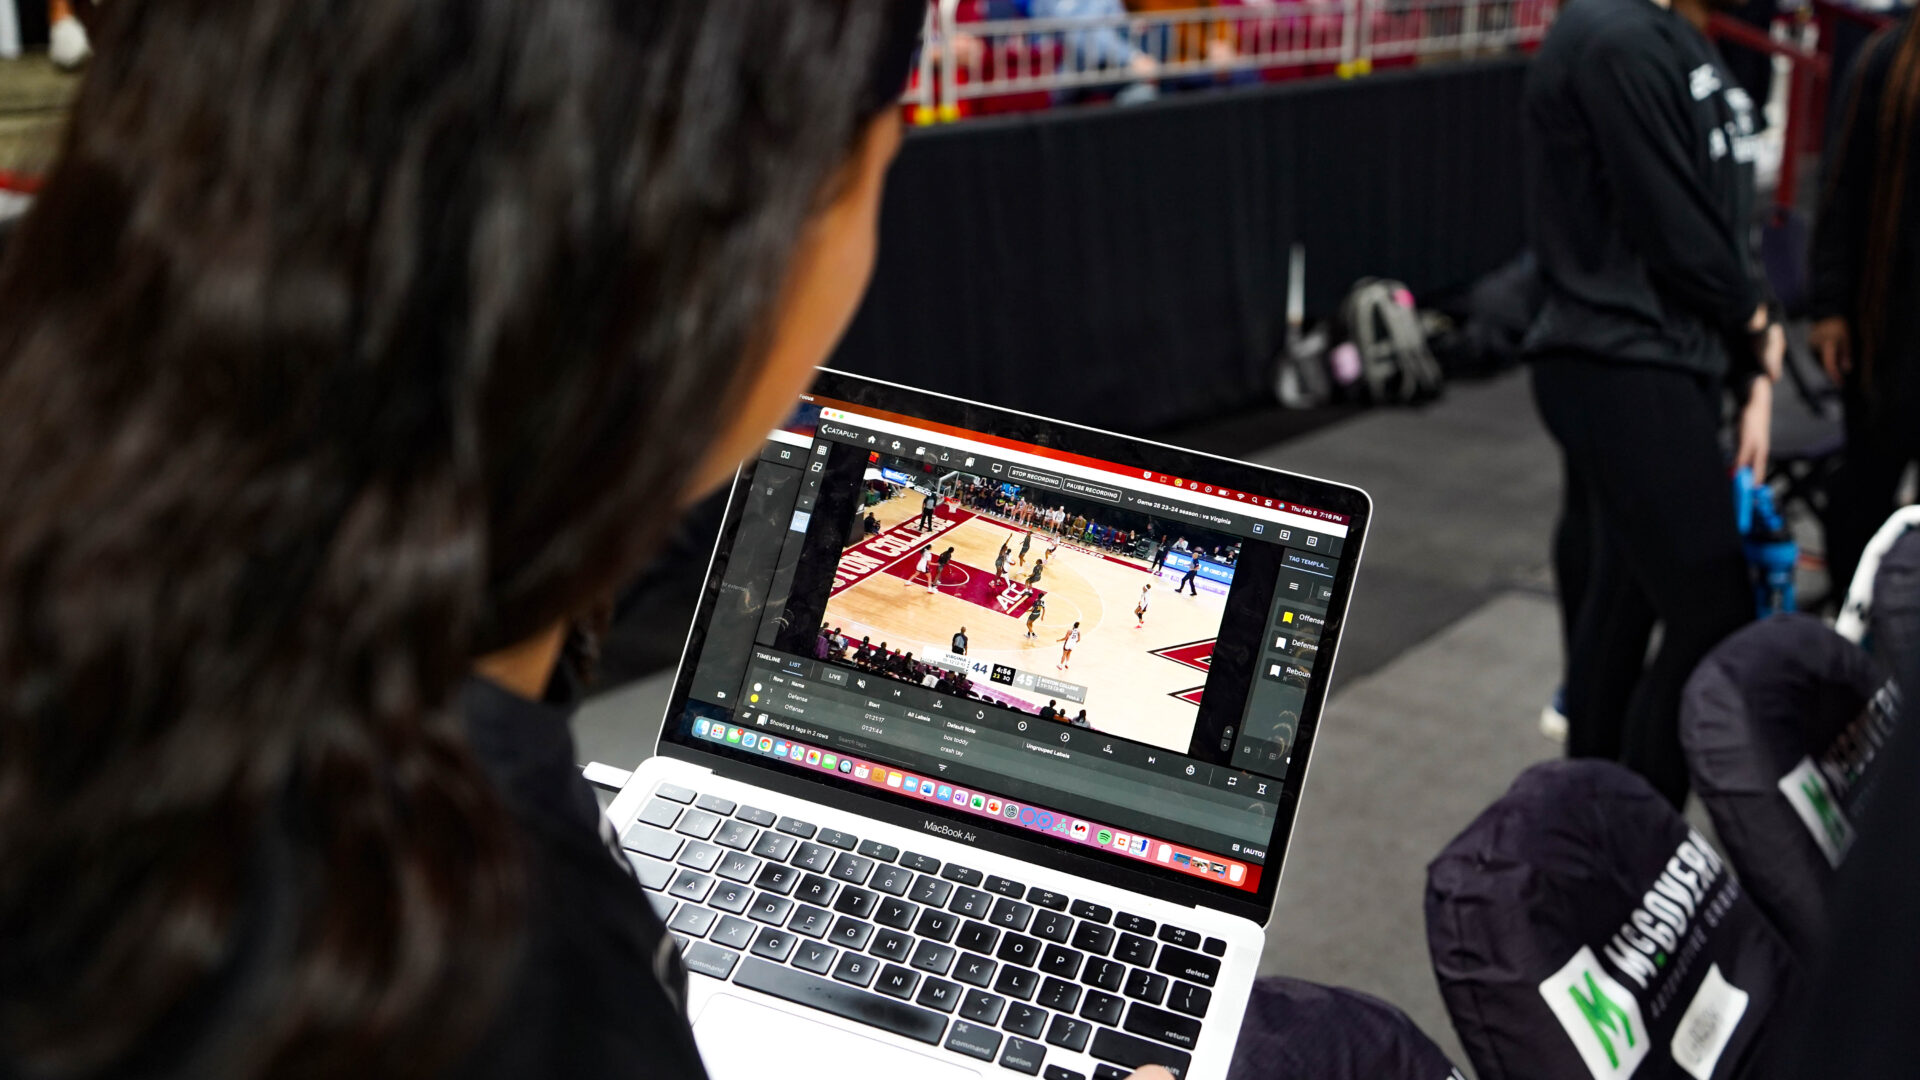 Une interaction ciblée entre un joueur de basket-ball du Boston College et un entraîneur a lieu, avec l'analyse Pro Video Focus visible sur l'écran de l'ordinateur portable. Cela met en évidence l’intégration de l’analyse vidéo en direct dans leur formation, cruciale pour améliorer les performances et les tactiques de jeu.